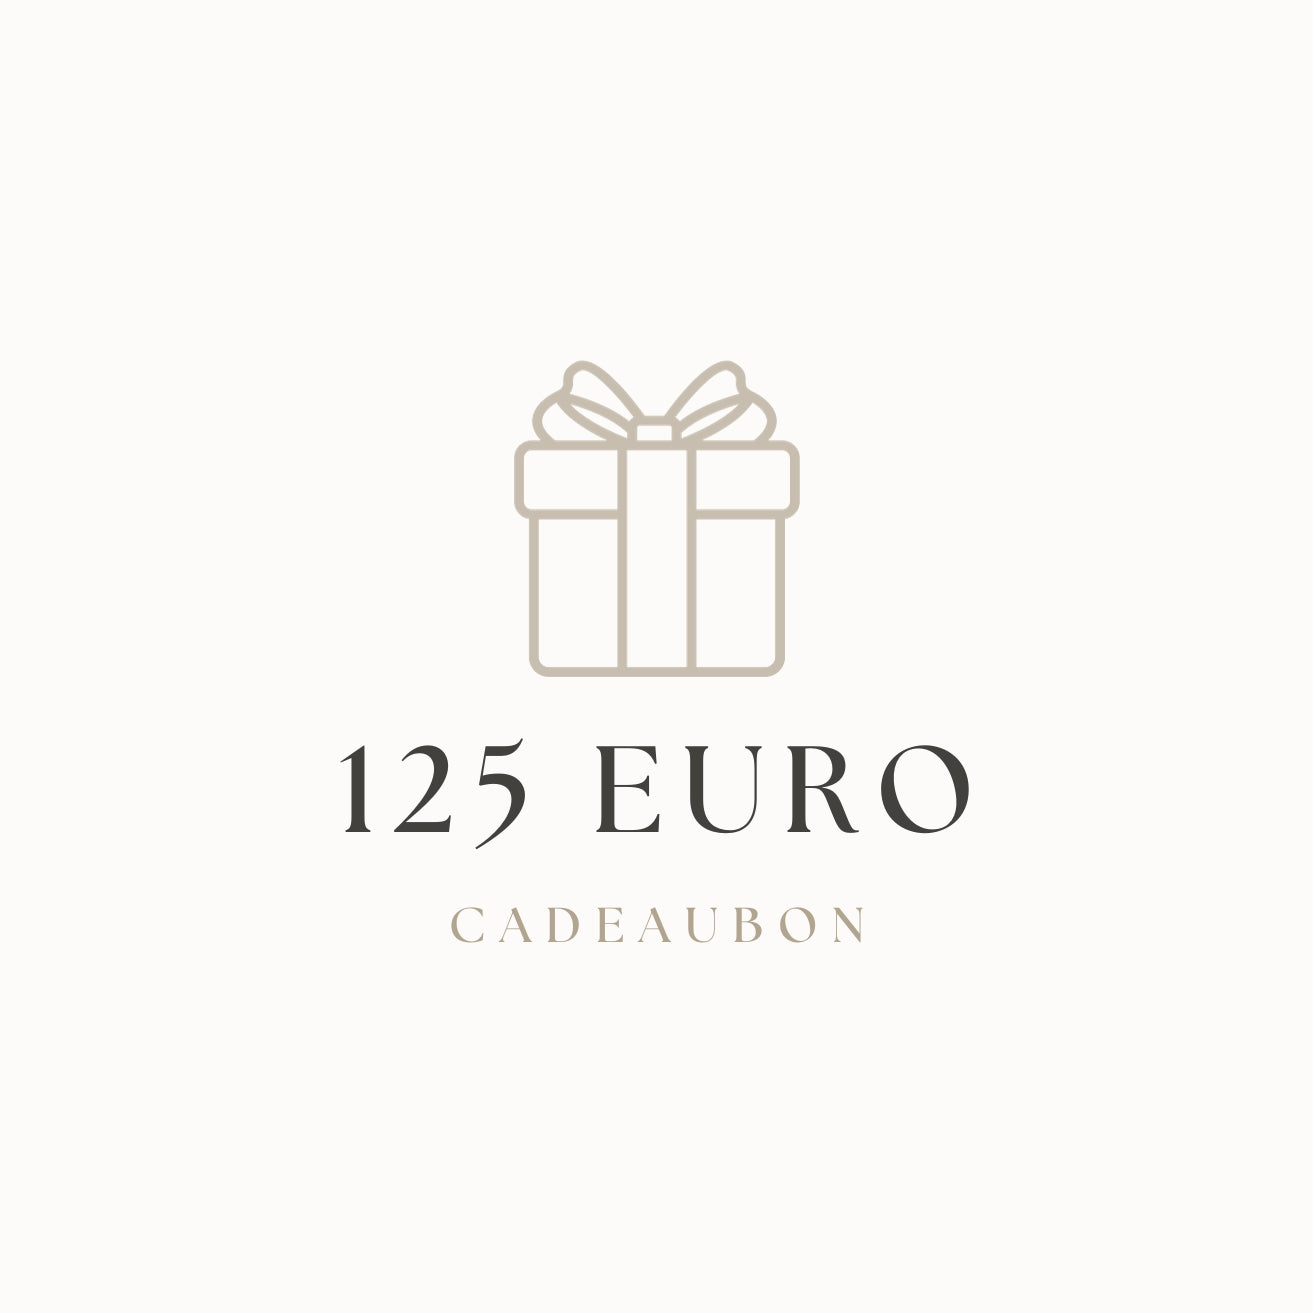 Chèque cadeau | 125 euros